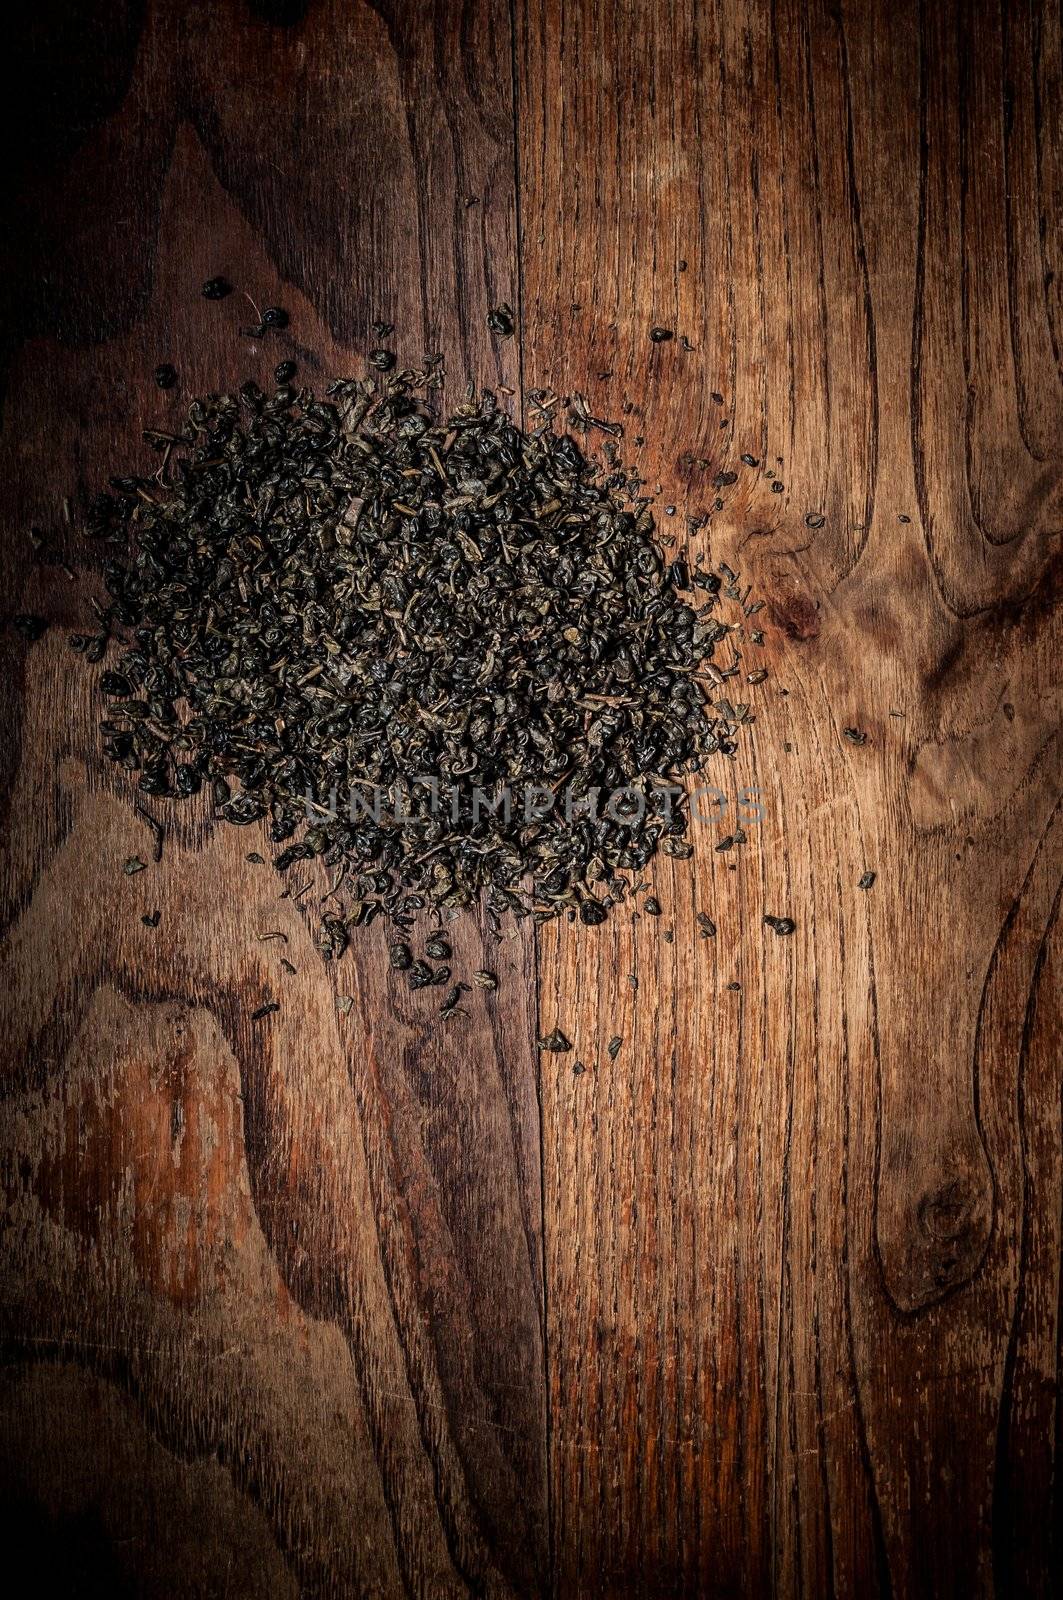 breen tea leaves on brown wood